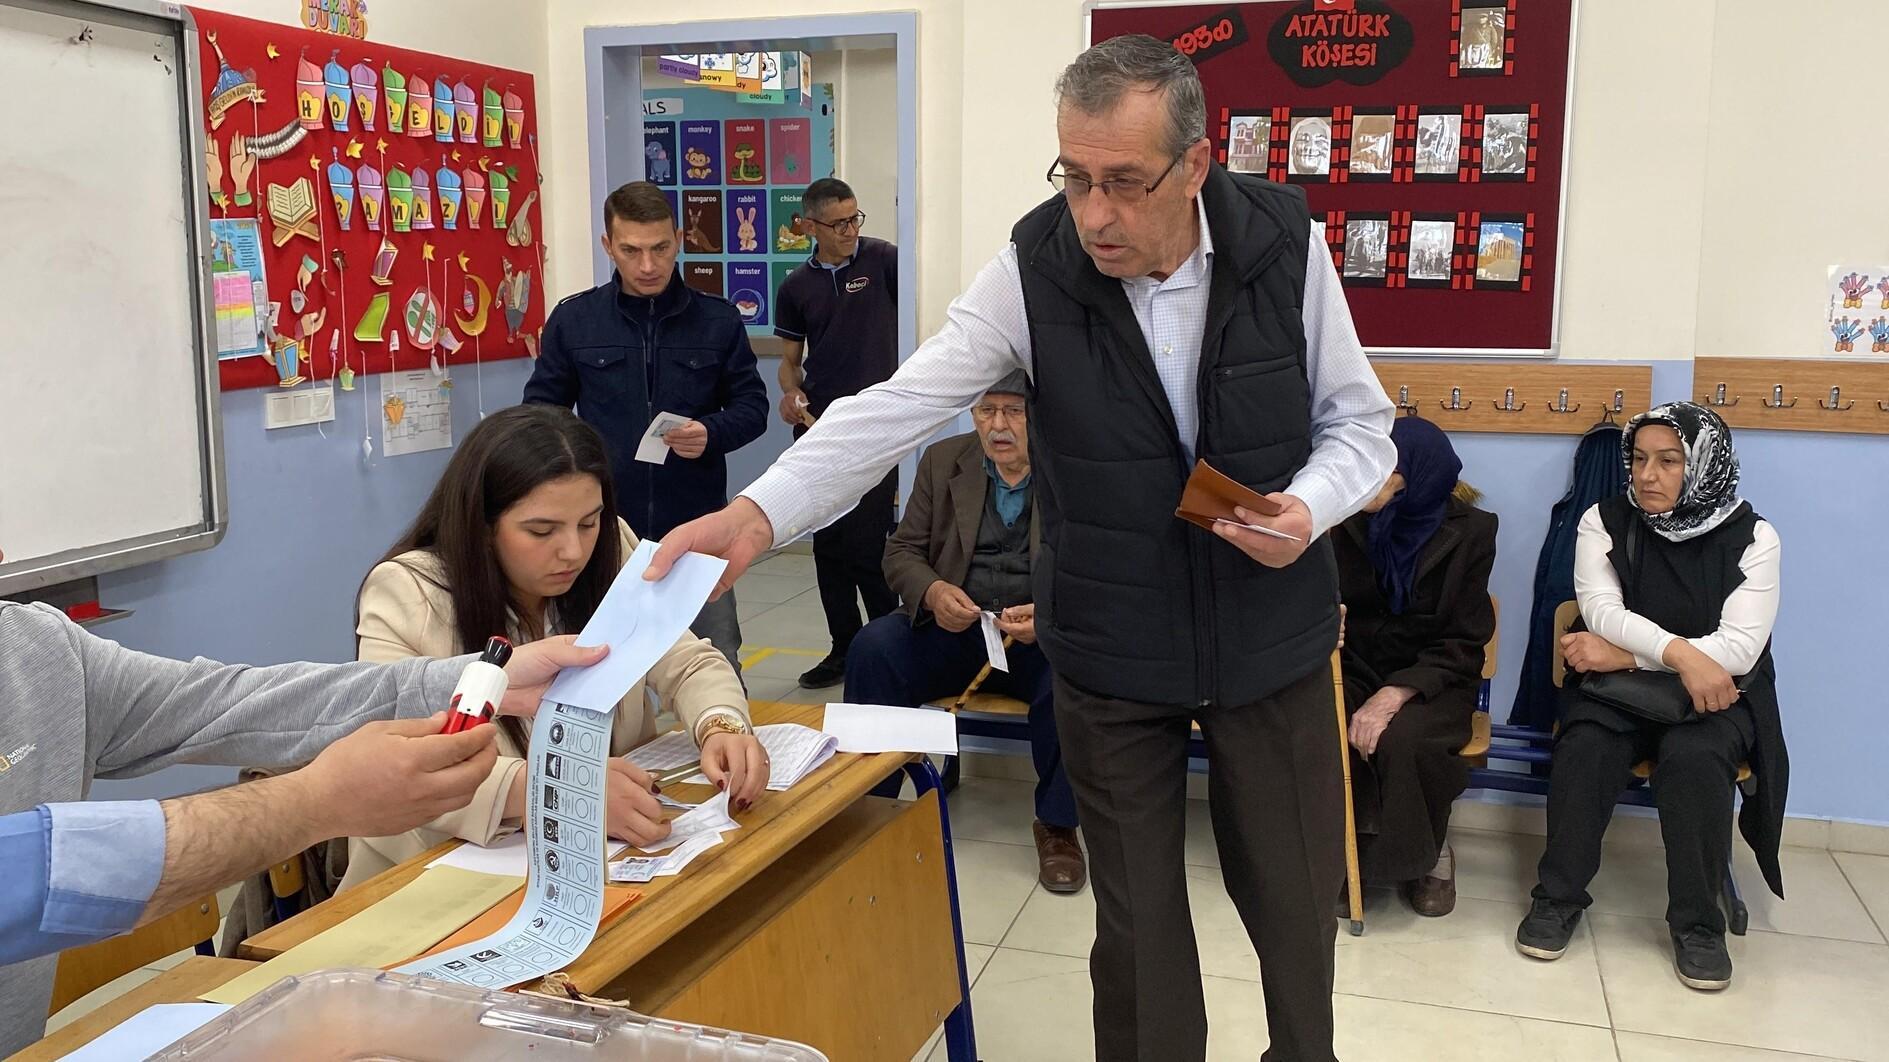 Het stemmen eindigt bij lokale verkiezingen in heel Türkiye, het telproces begint